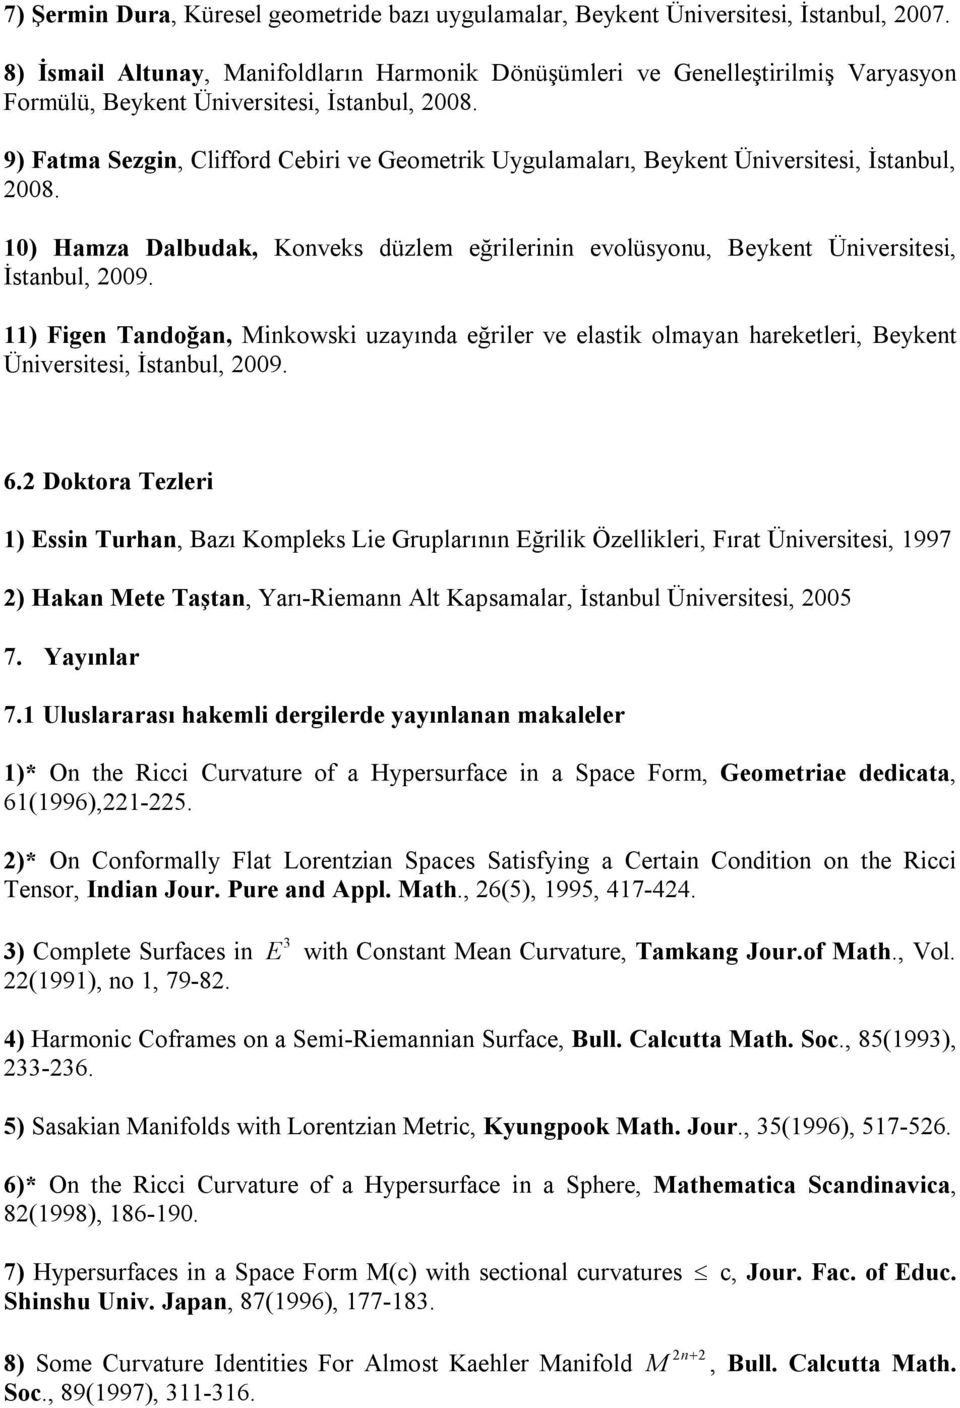 9) Fatma Sezgin, Clifford Cebiri ve Geometrik Uygulamaları, Beykent Üniversitesi, İstanbul, 2008. 10) Hamza Dalbudak, Konveks düzlem eğrilerinin evolüsyonu, Beykent Üniversitesi, İstanbul, 2009.